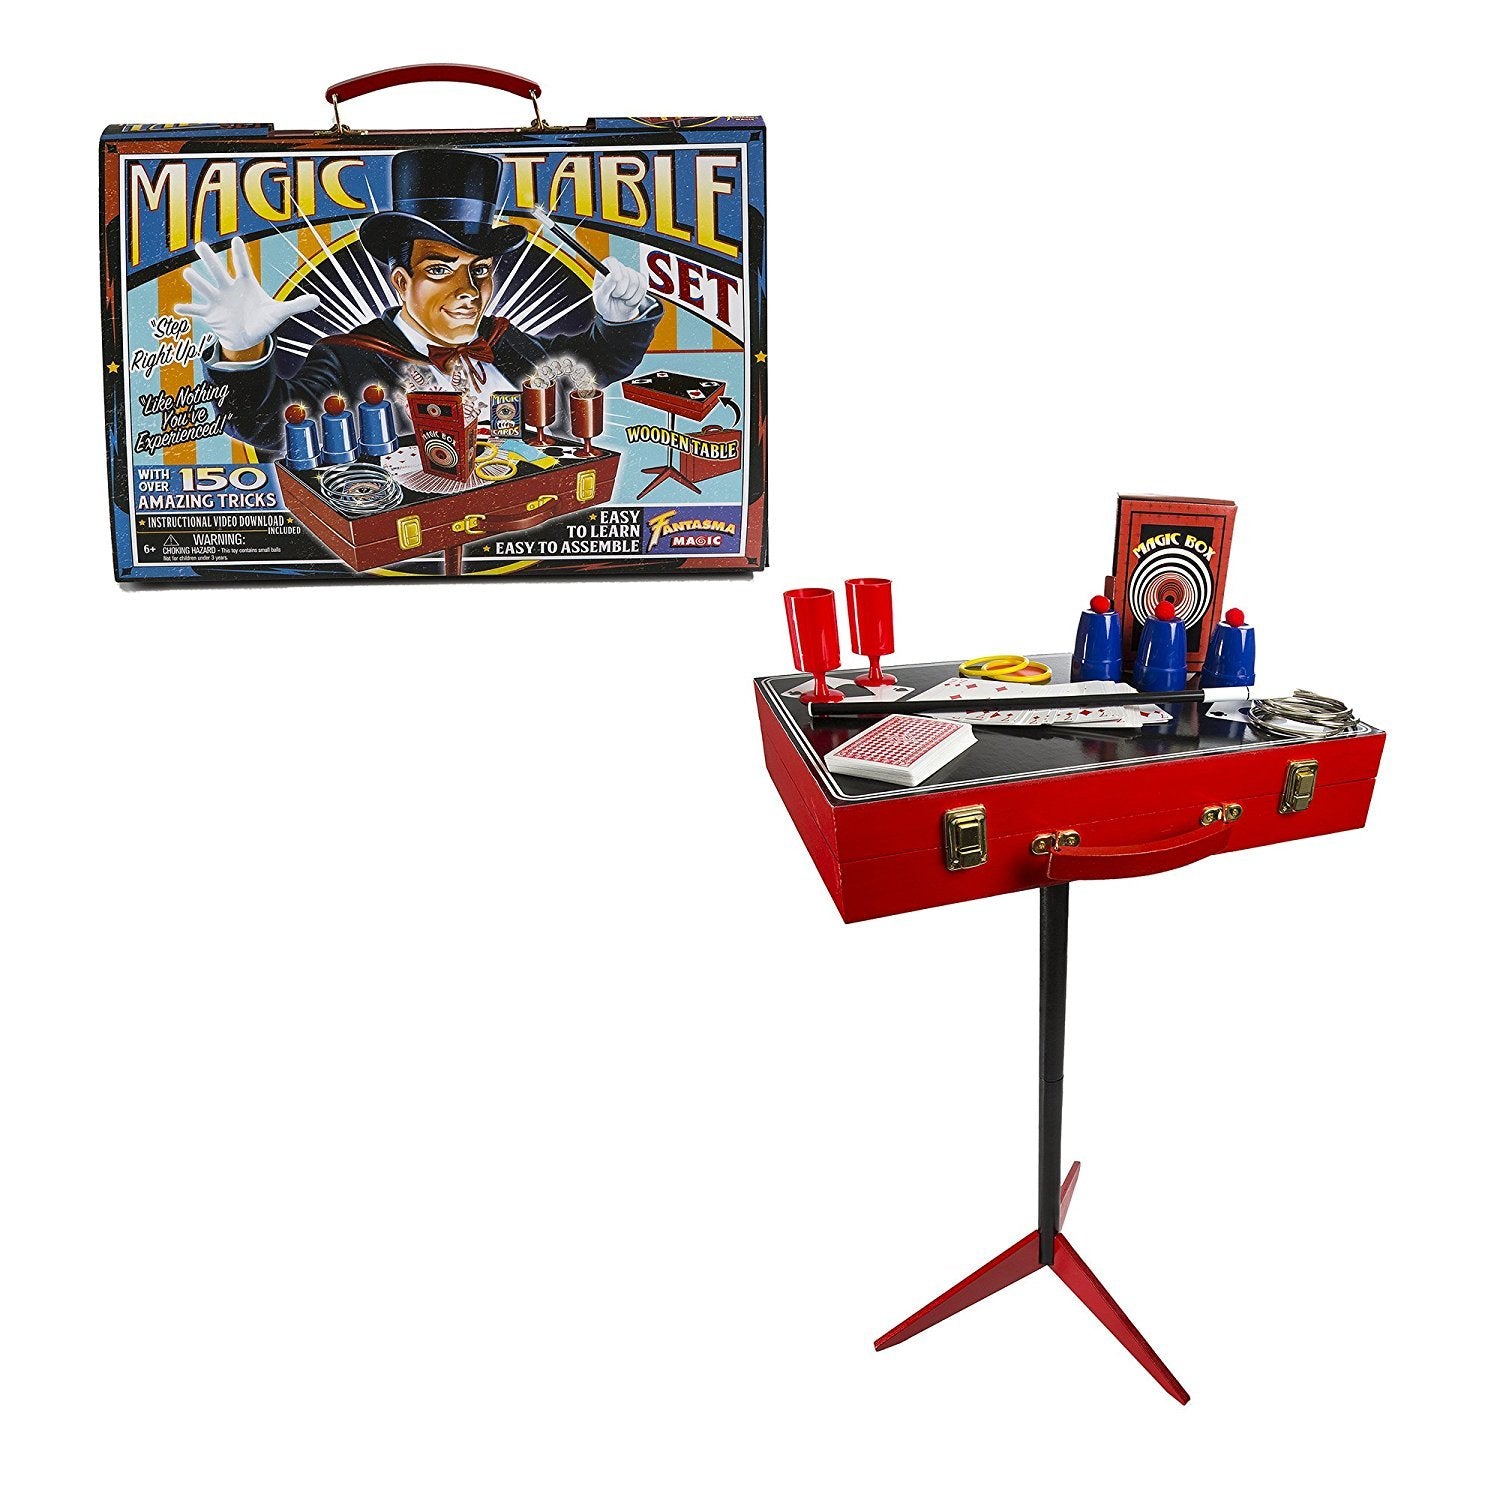 Retro Magic Table Magicians Set 150 Tricks Instructional